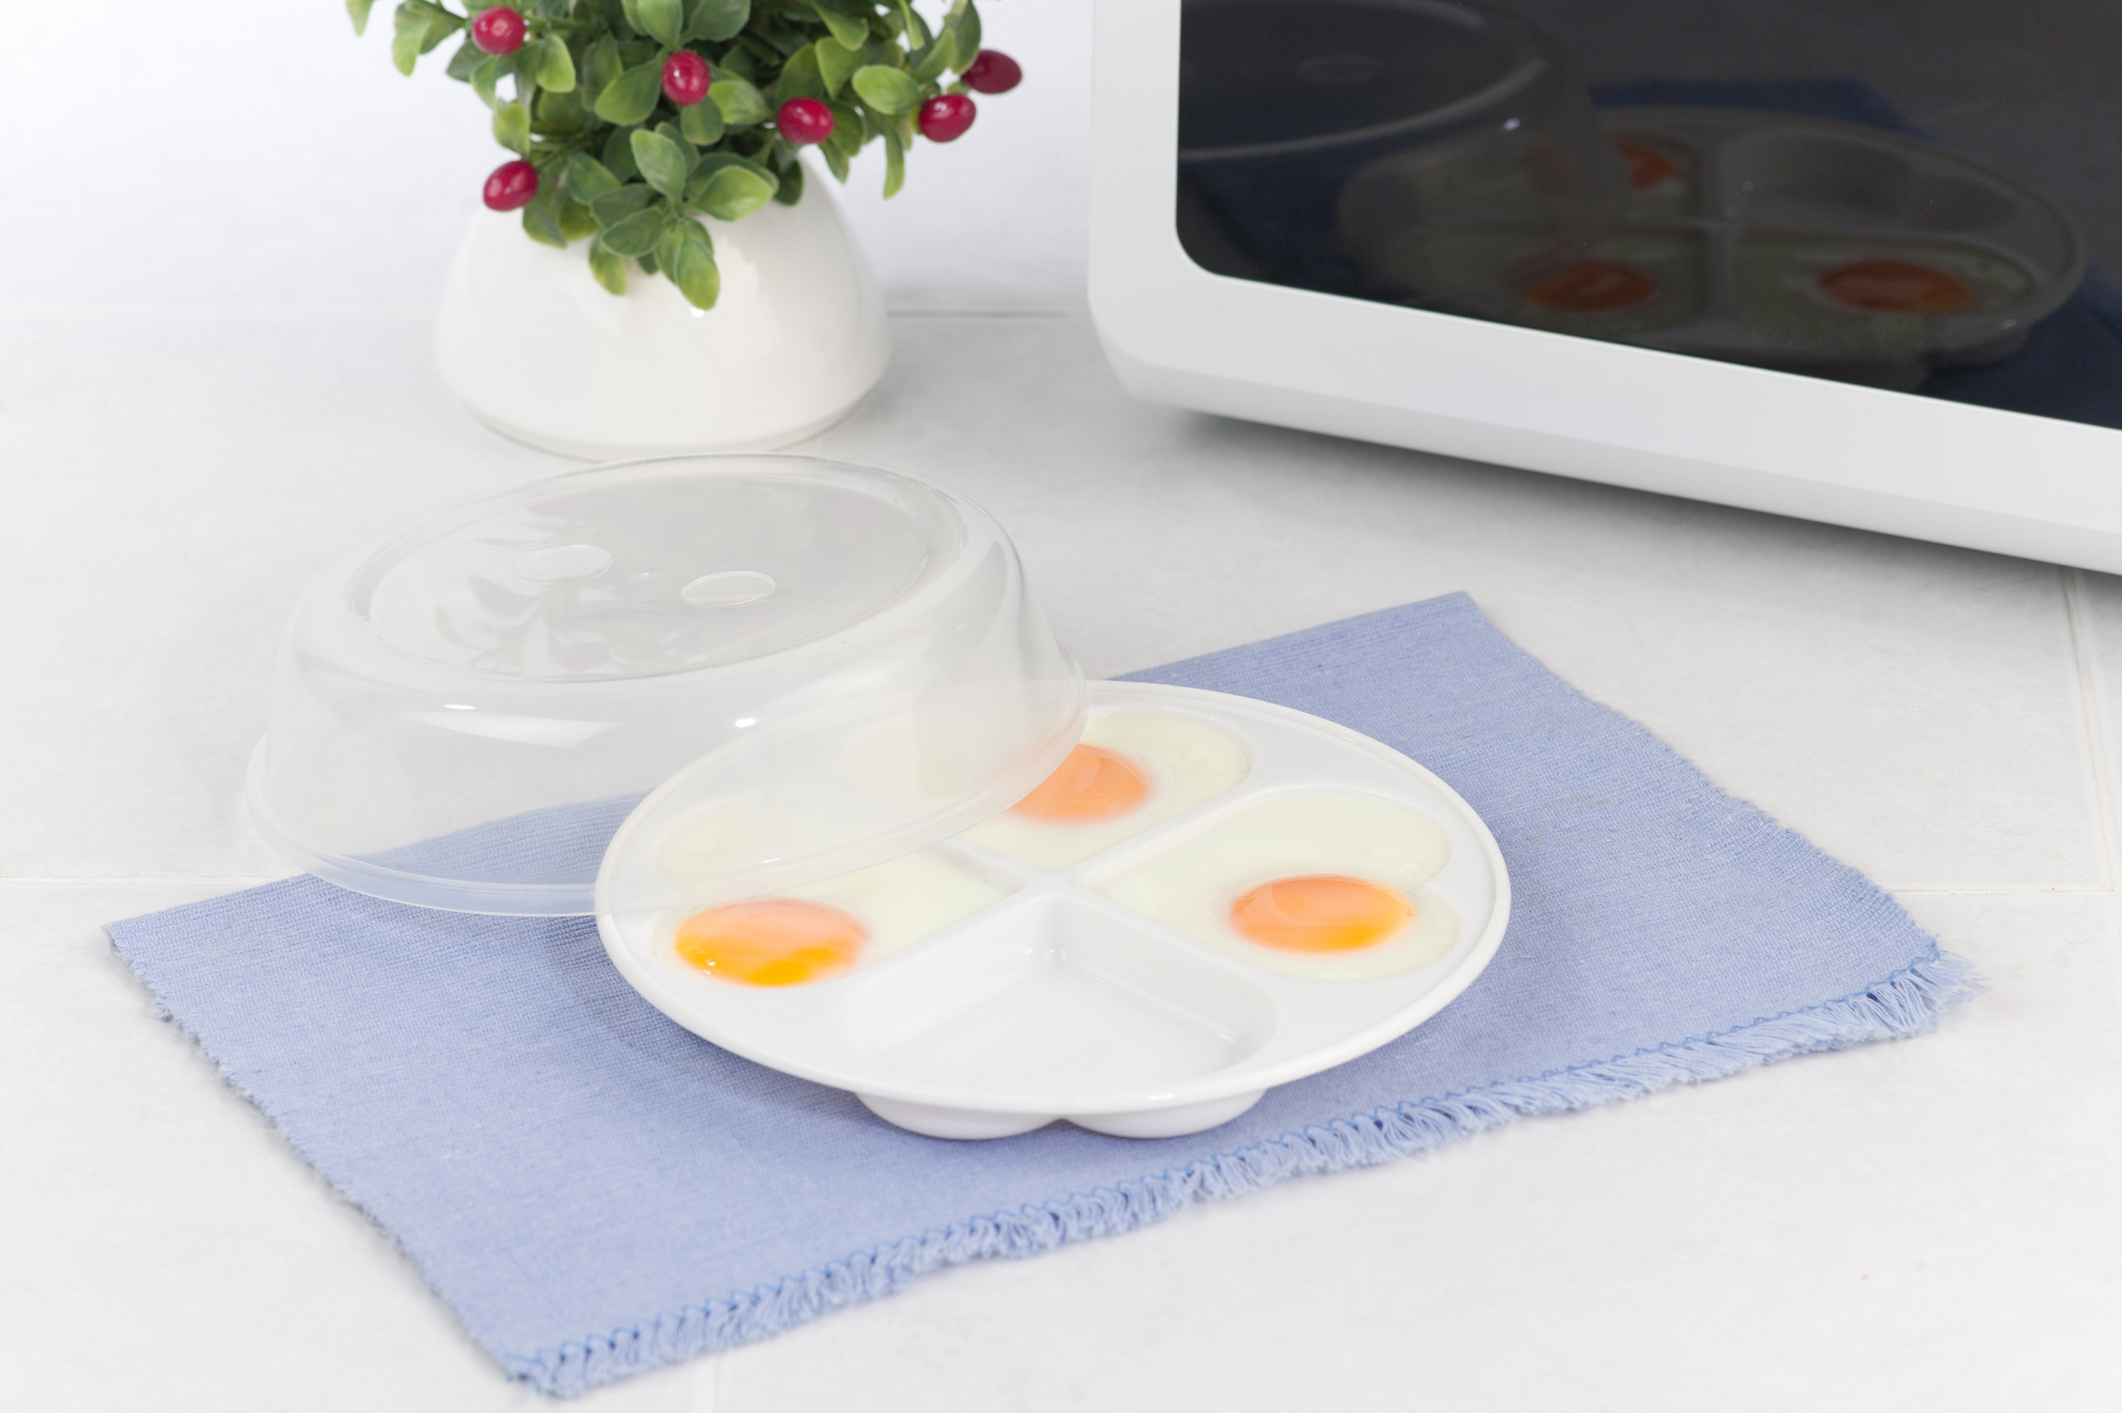 Cómo hacer huevos fritos en el microondas - Comedera - Recetas, tips y  consejos para comer mejor.